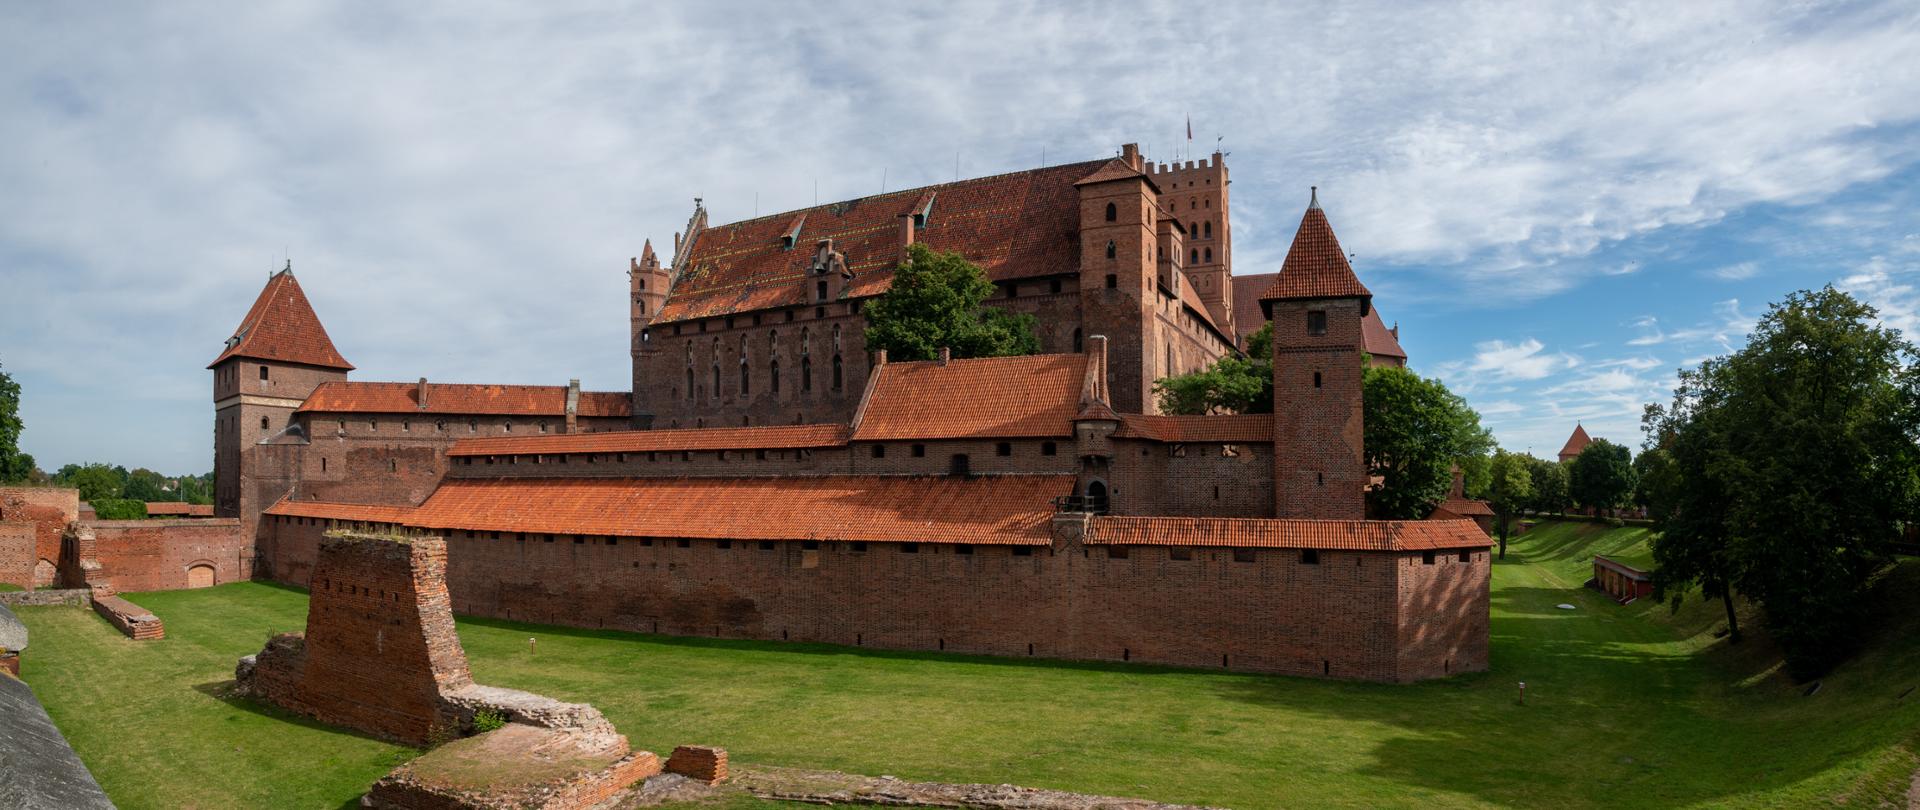 Zamek w Malborku, fot. Ela Białkowska